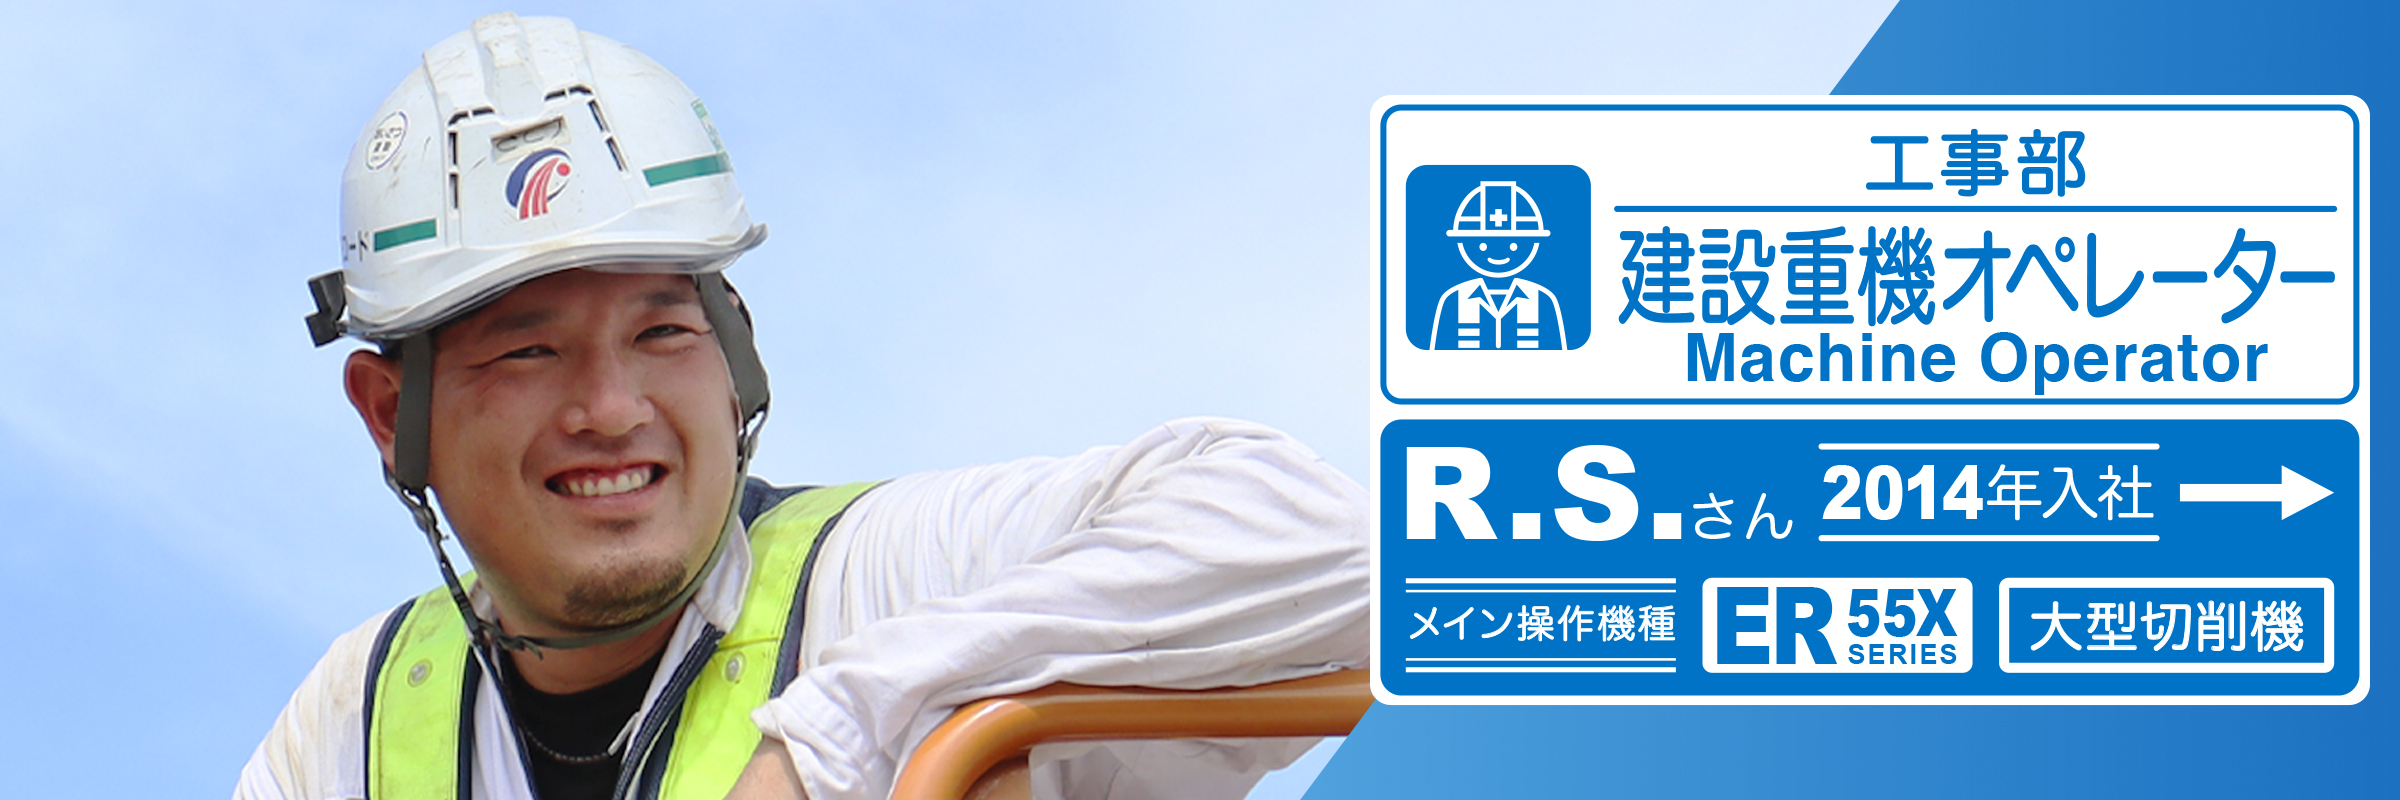 工事部 R.S.(2014年3月入社)